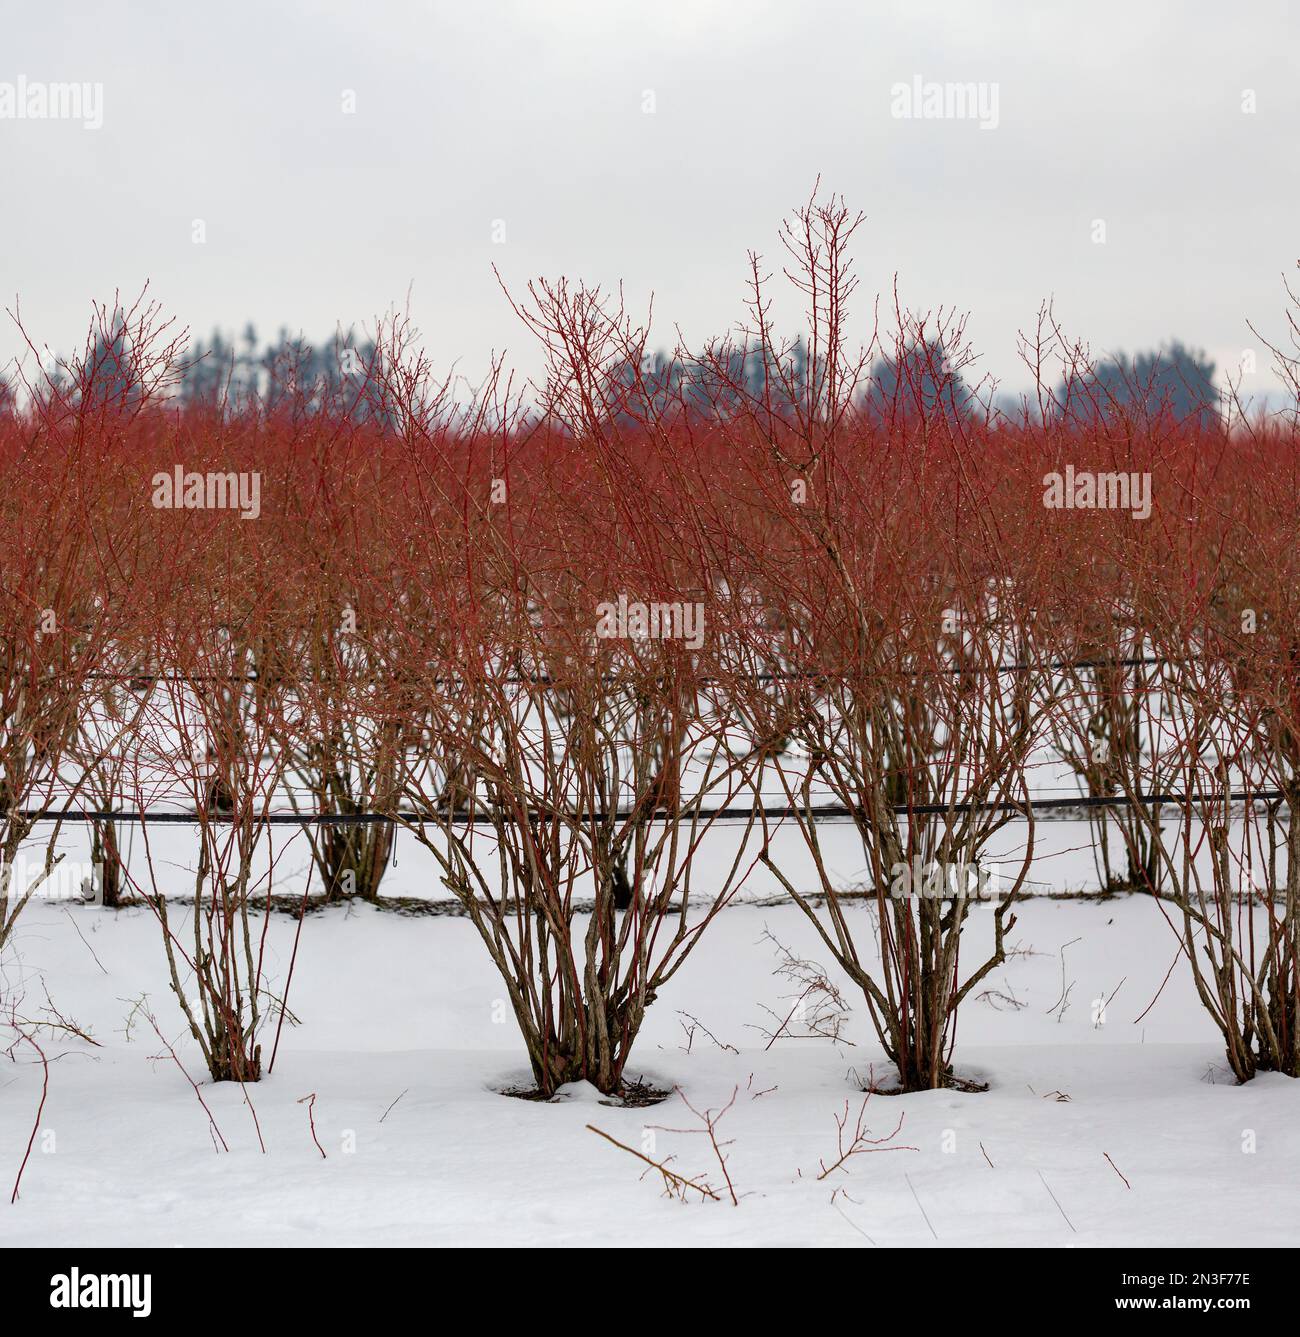 Gros plan de buissons nus de baies dans un champ en hiver, emmenés sur une route de campagne dans la neige; Abbotsford, Colombie-Britannique, Canada Banque D'Images